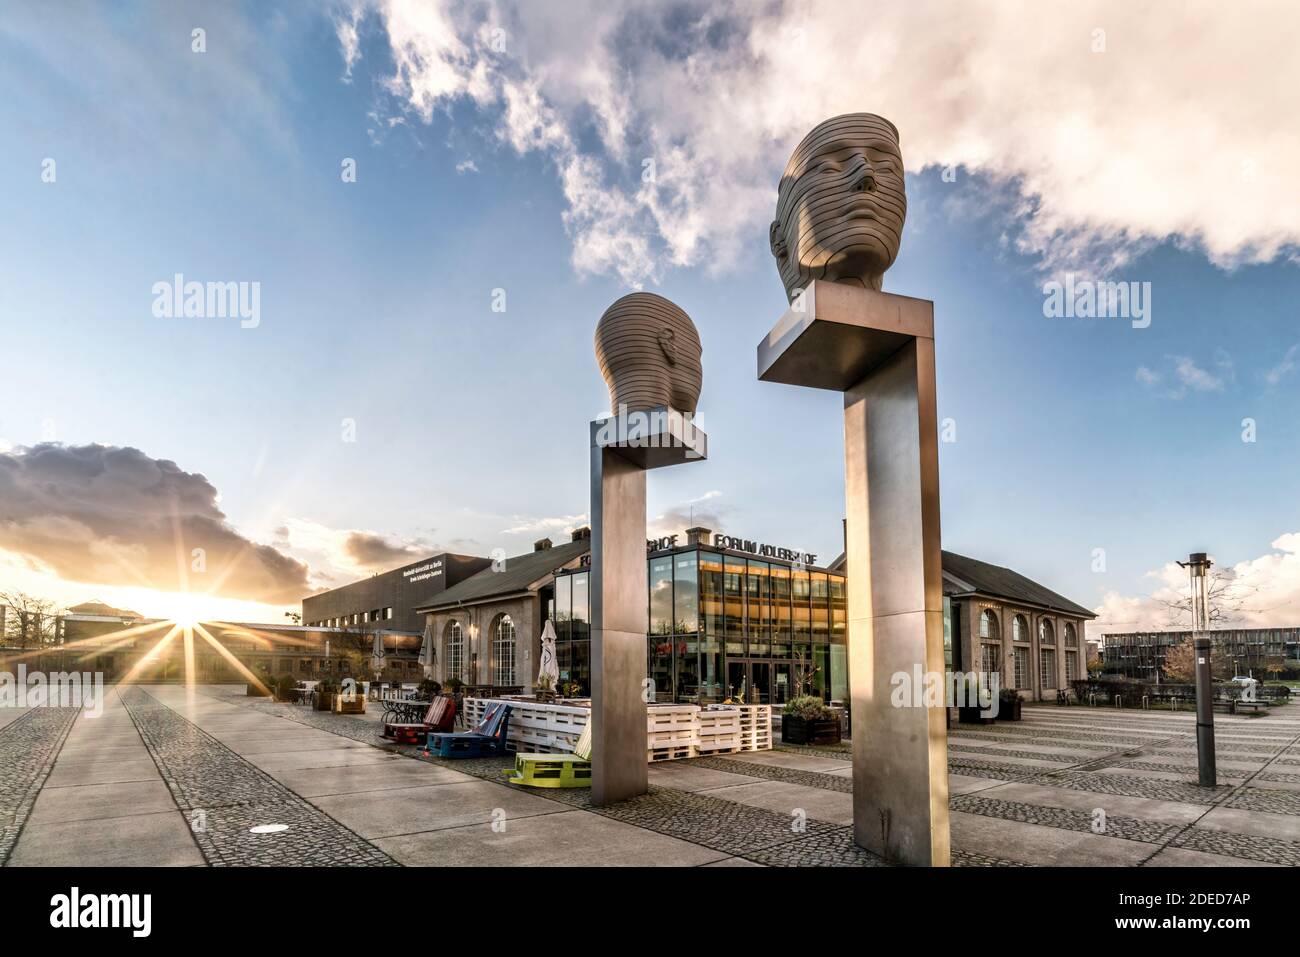 Installazione Kopfbewegung im Forum Adlershof, Projekt der Künstlerinnen Josefine Günschel und Margund Smolka auf dem Campus der Humboldt-Universität, Foto Stock